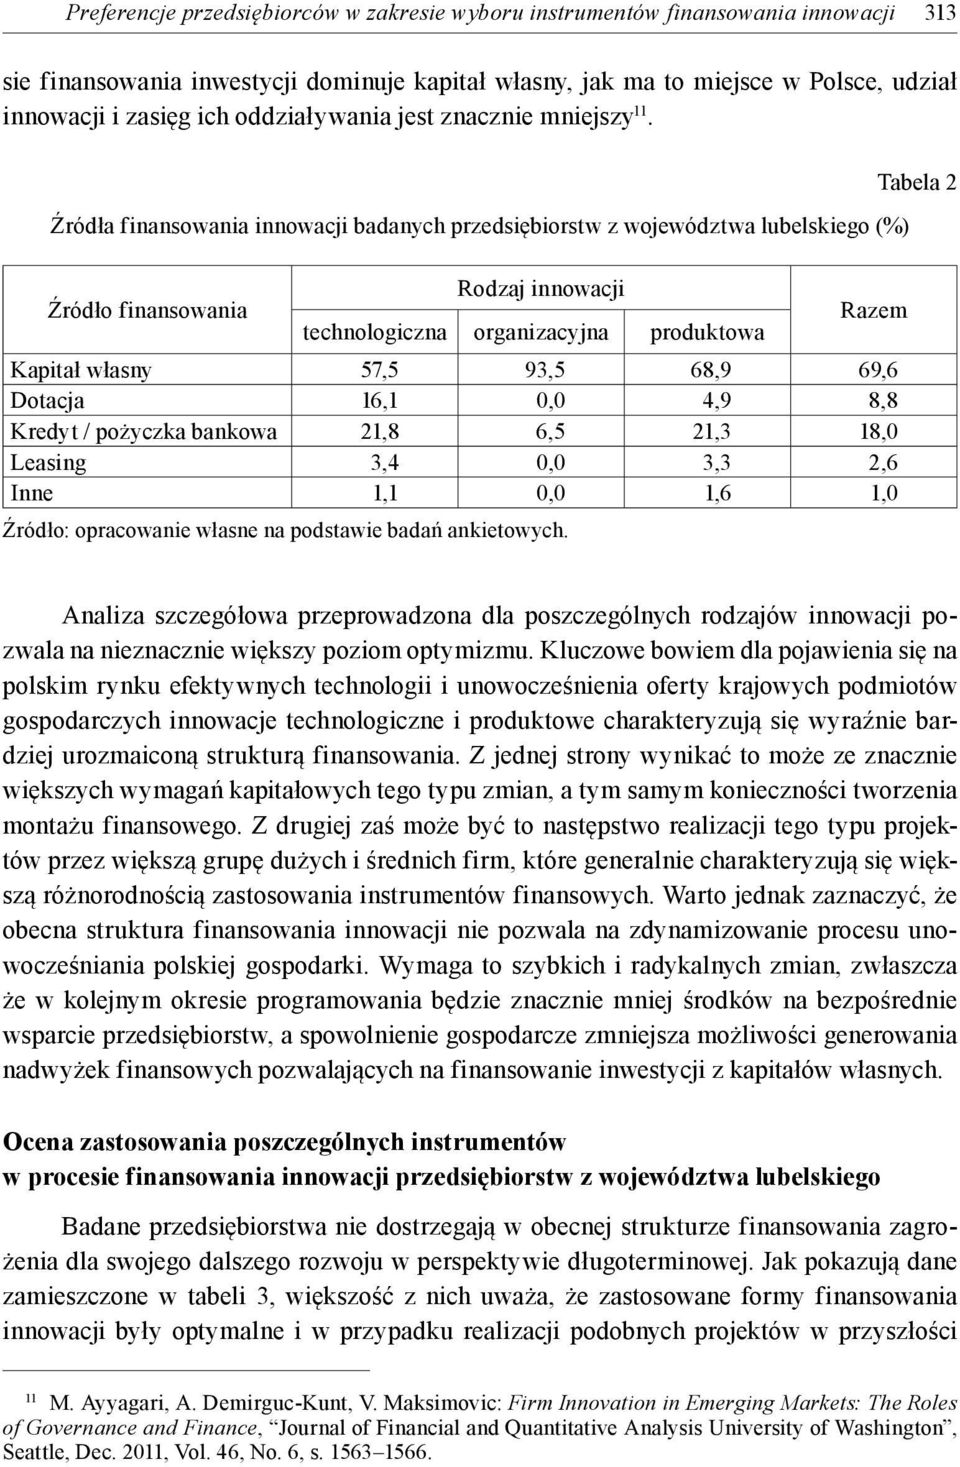 Źródła finansowania innowacji badanych przedsiębiorstw z województwa lubelskiego (%) Źródło finansowania Rodzaj innowacji technologiczna organizacyjna produktowa Razem Kapitał własny 57,5 93,5 68,9